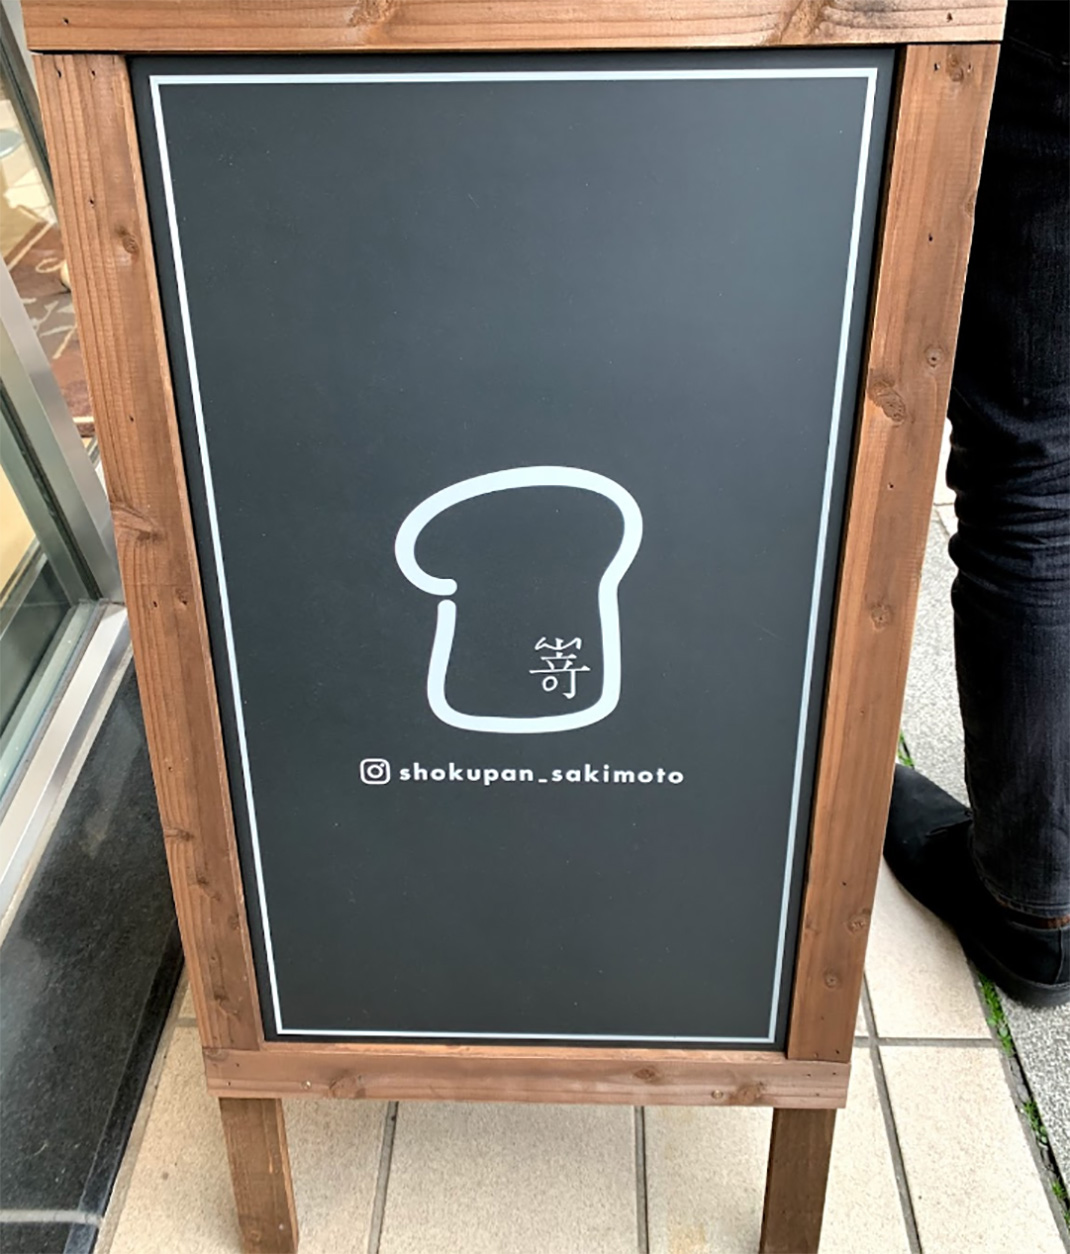 嵜高级生吐司专门店 日本 吐司 字体 店招 logo设计 餐厅LOGO VI设计 空间设计 视觉餐饮